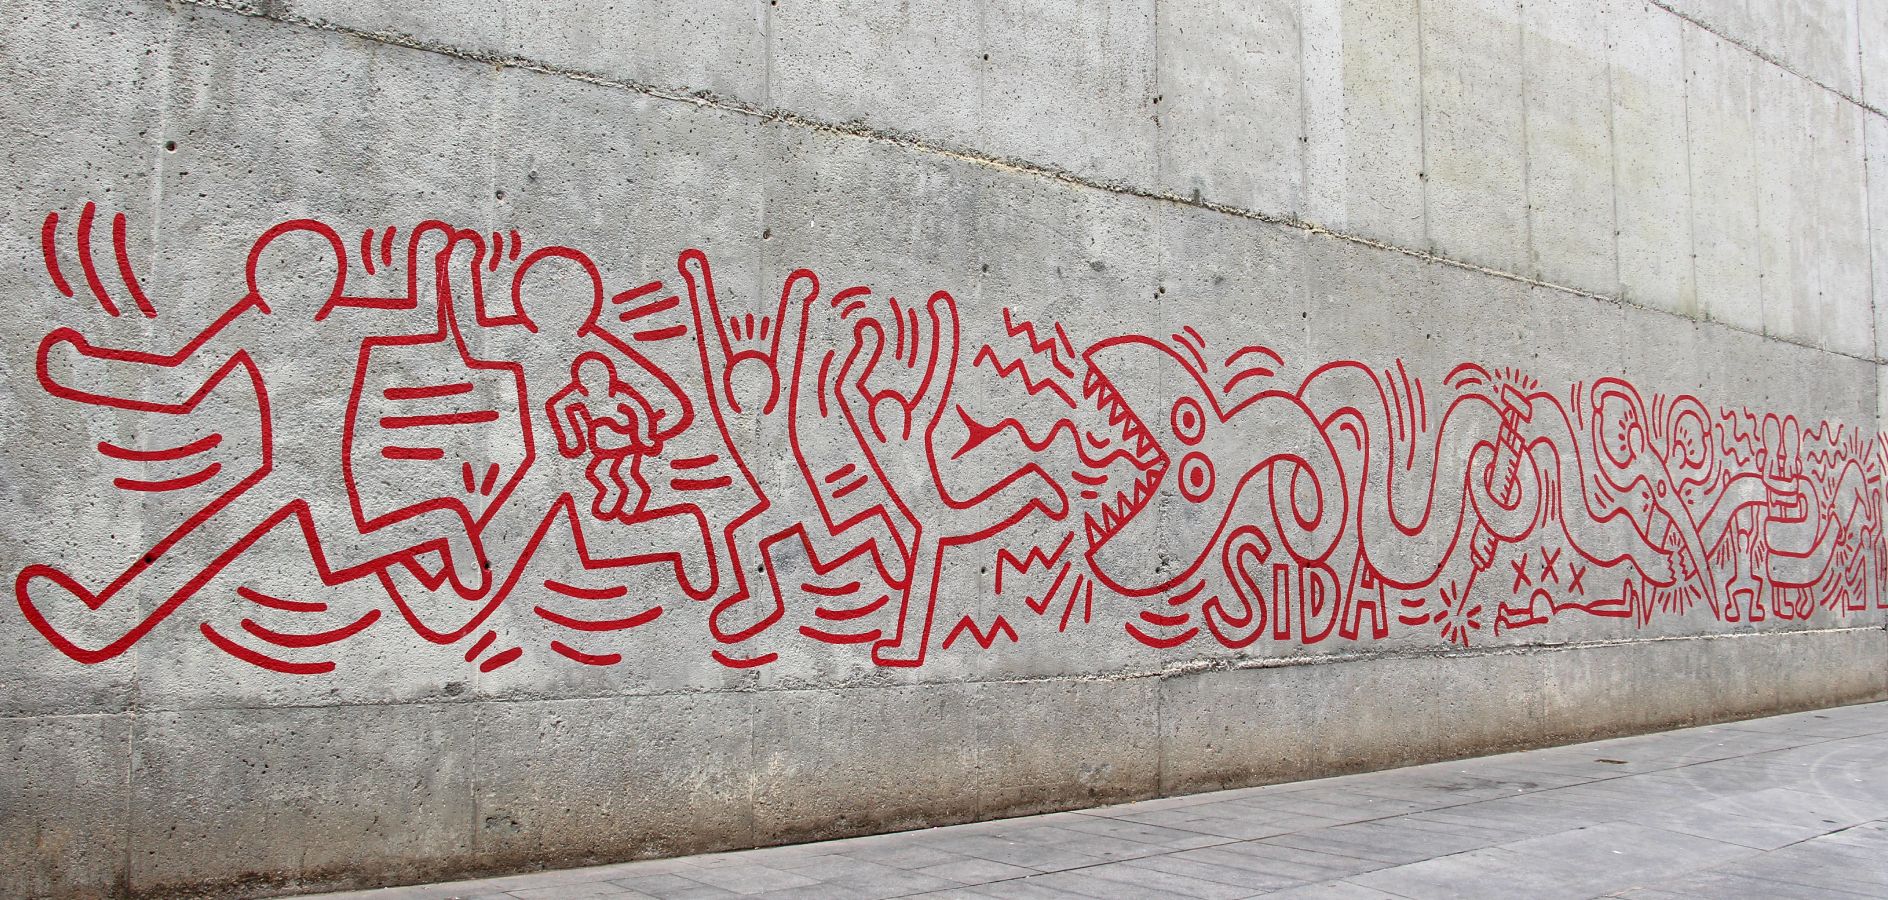 Rutes per descobrir l’art urbà a Barcelona